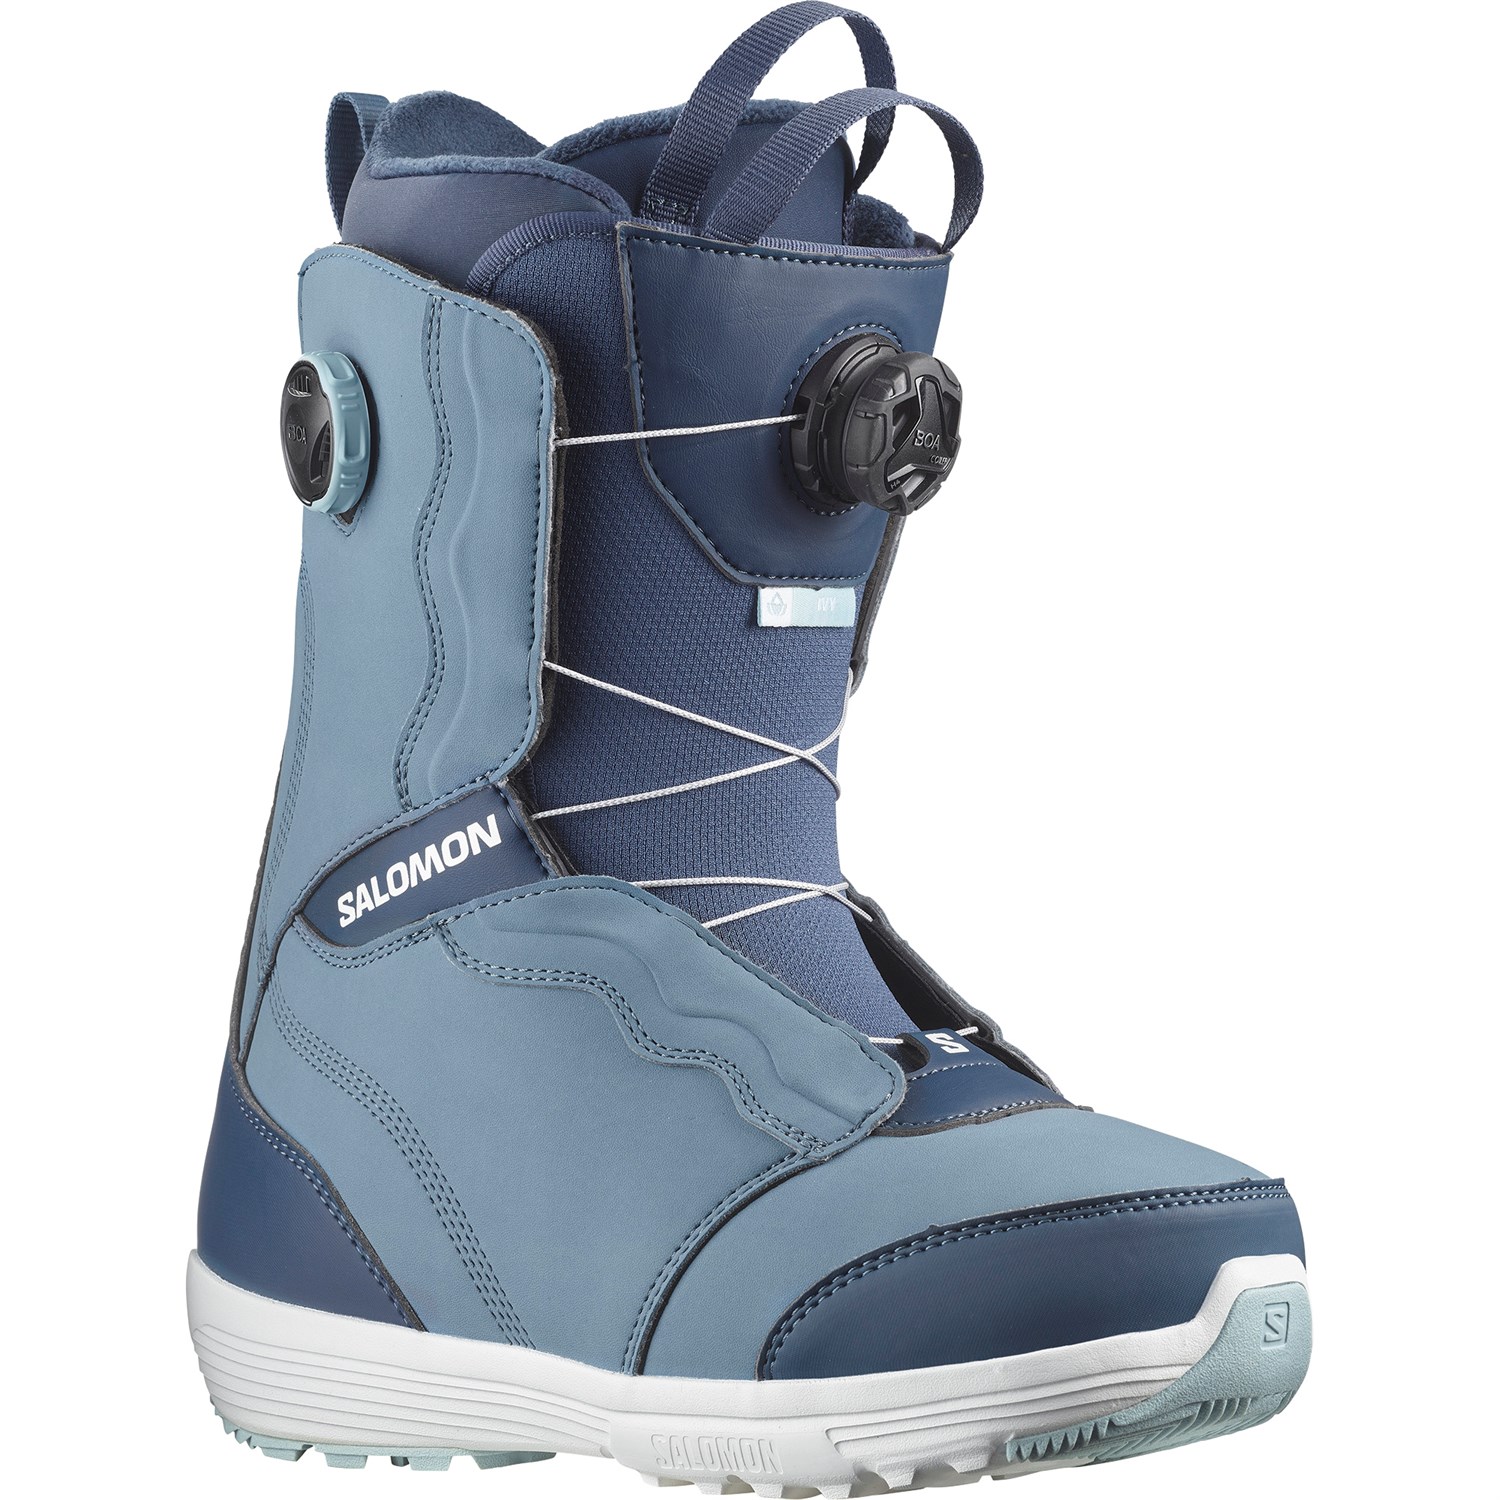 Ботинки для сноубординга Salomon Ivy Boa SJ, синий ботинки для сноубординга salomon faction boa серый